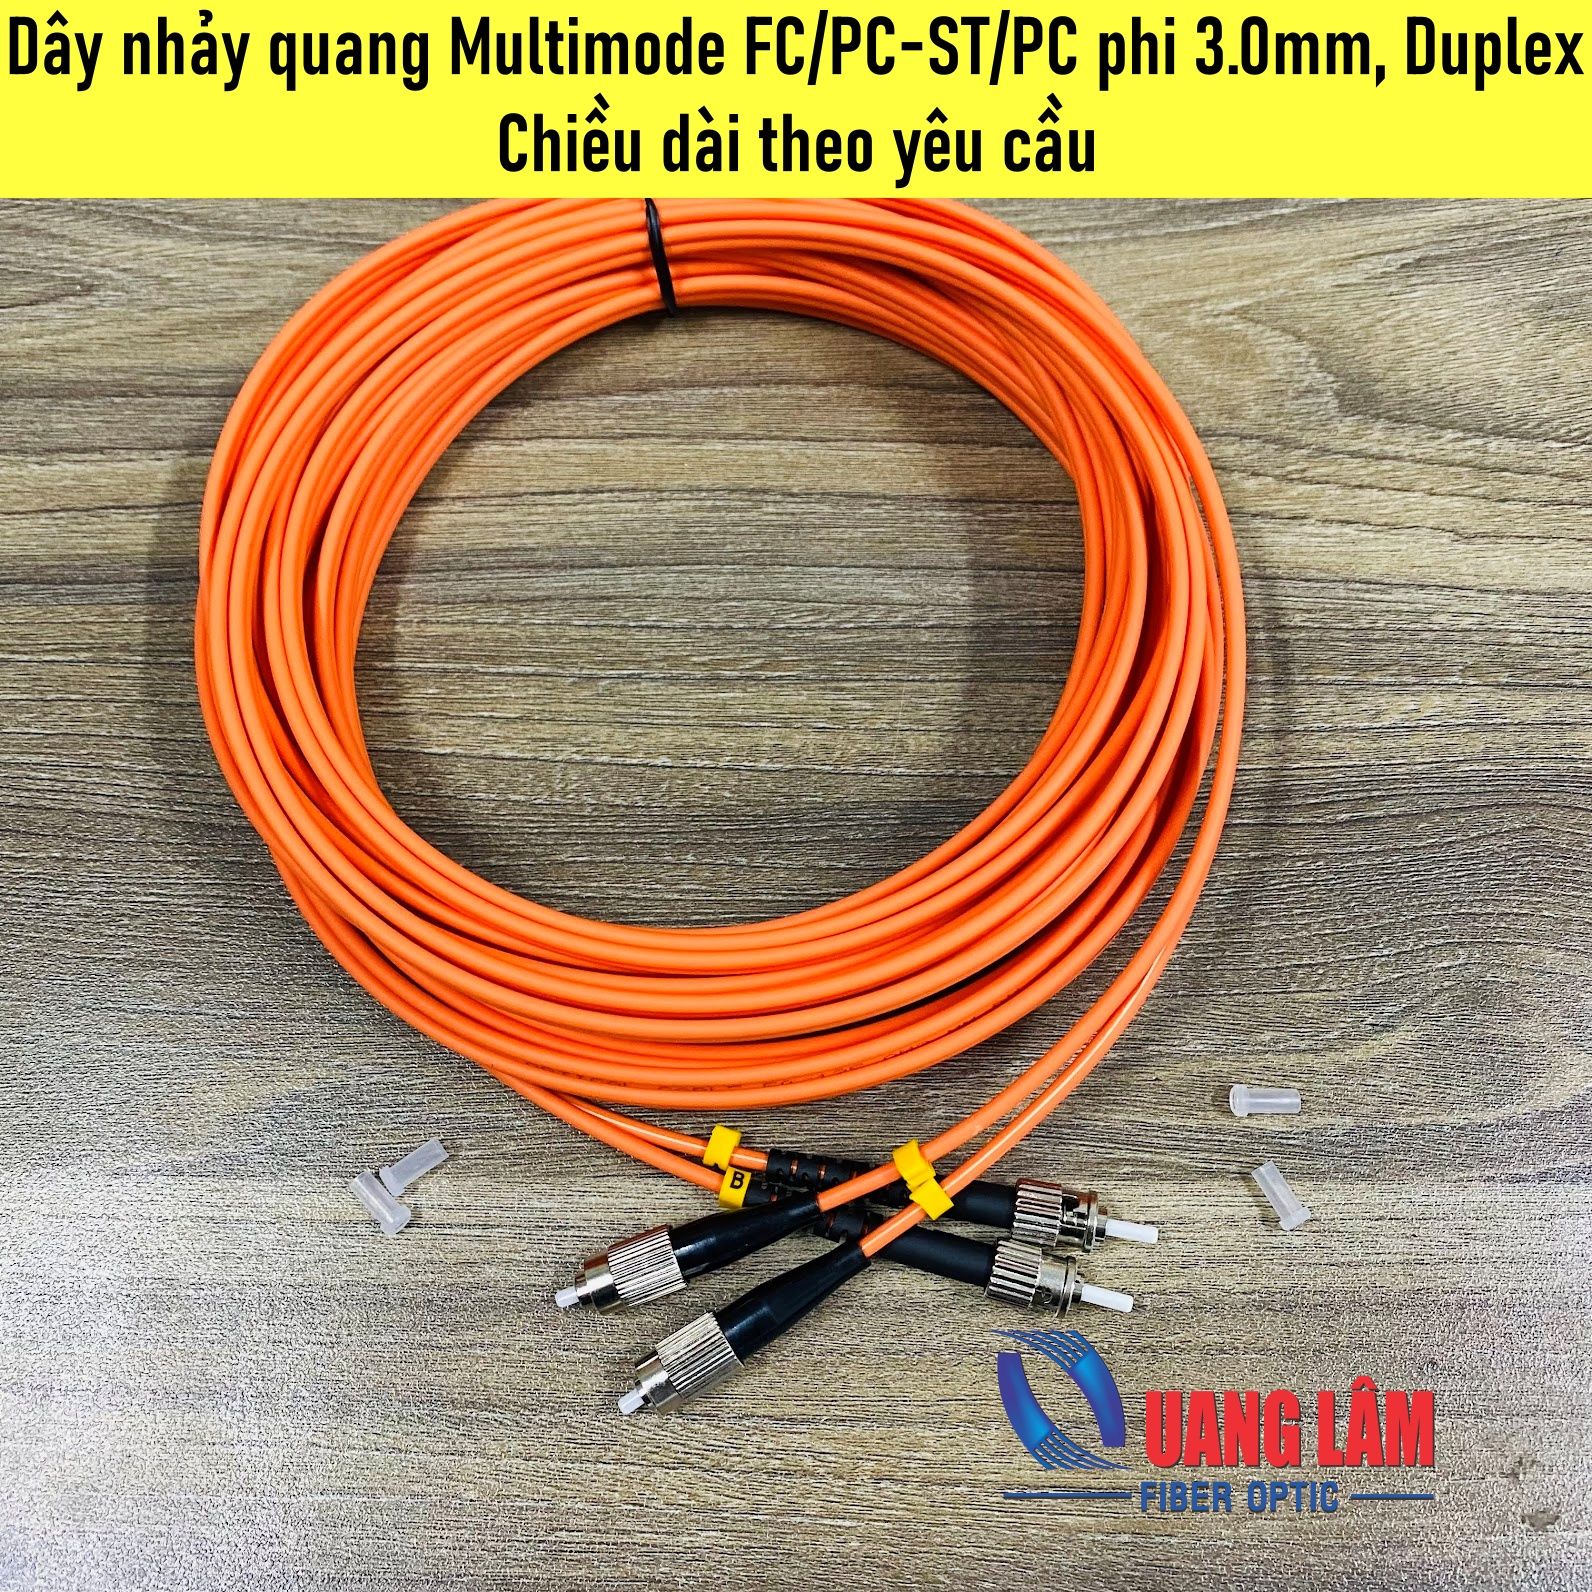 Dây Nhảy Quang Multimode FC/PC-ST/PC Duplex, Phi 2.0mm - Chiều dài theo yêu cầu